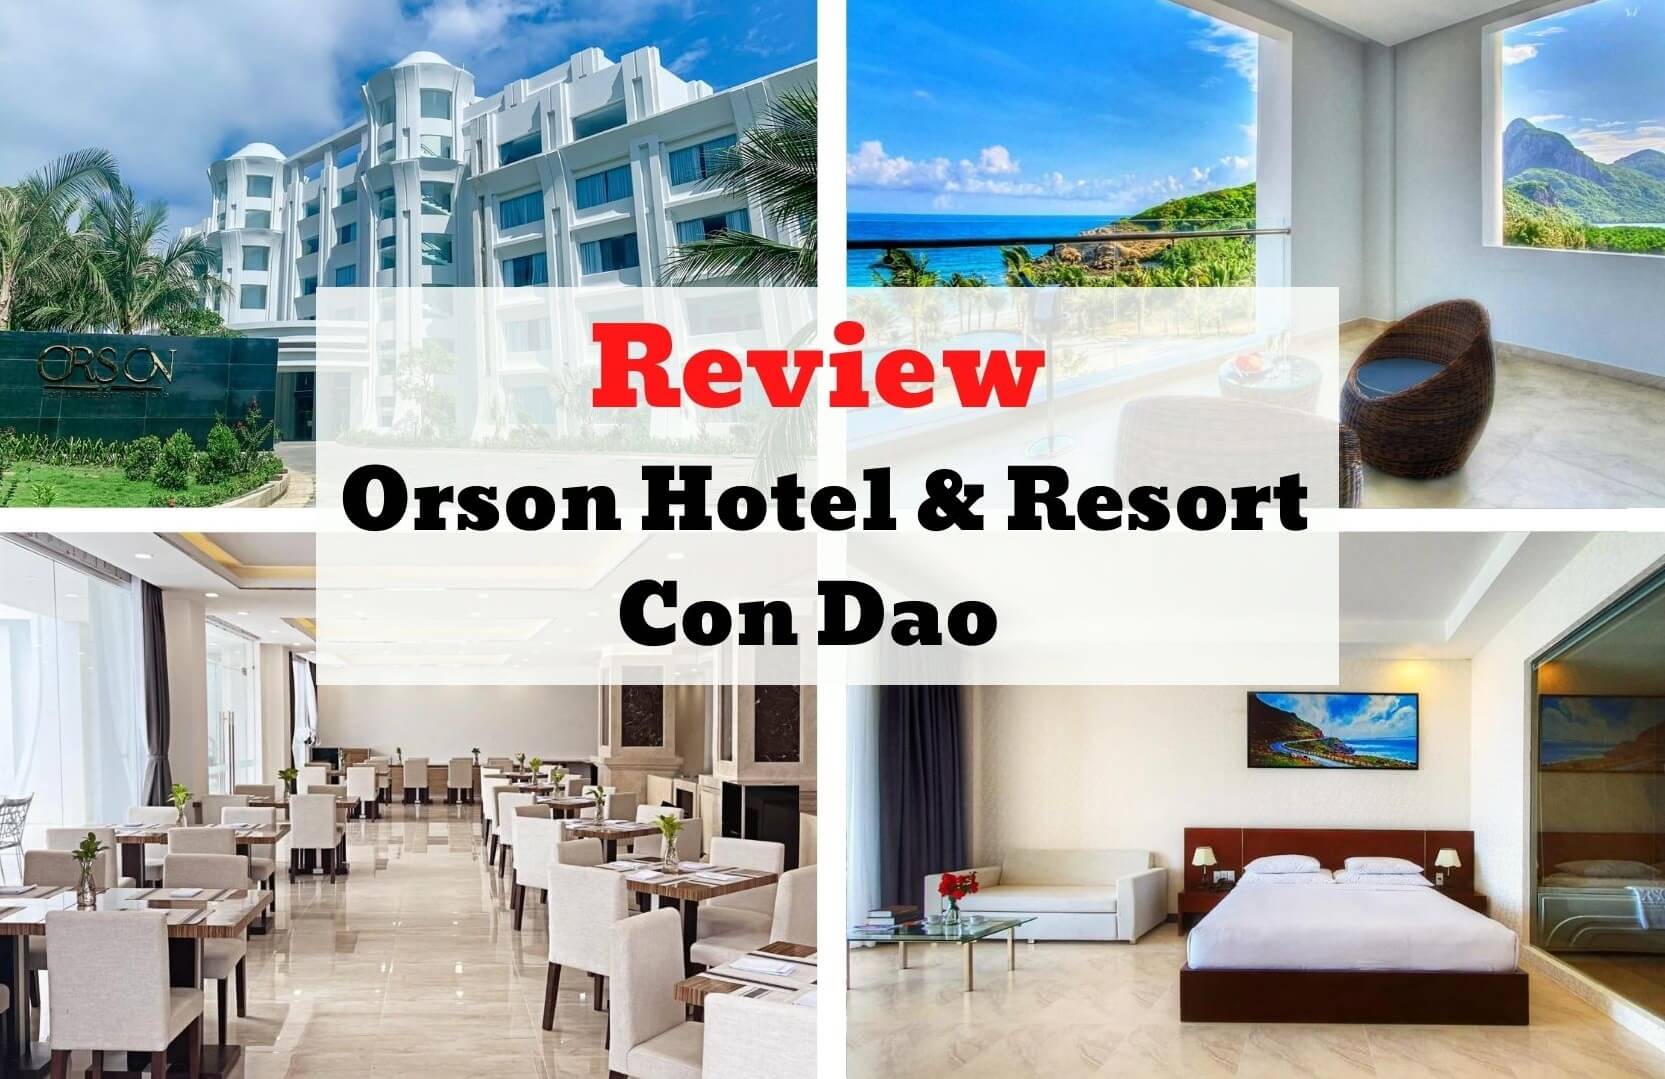 Review Orson Hotel & Resort Con Dao - Dinh thự hiện đại bên bờ biển